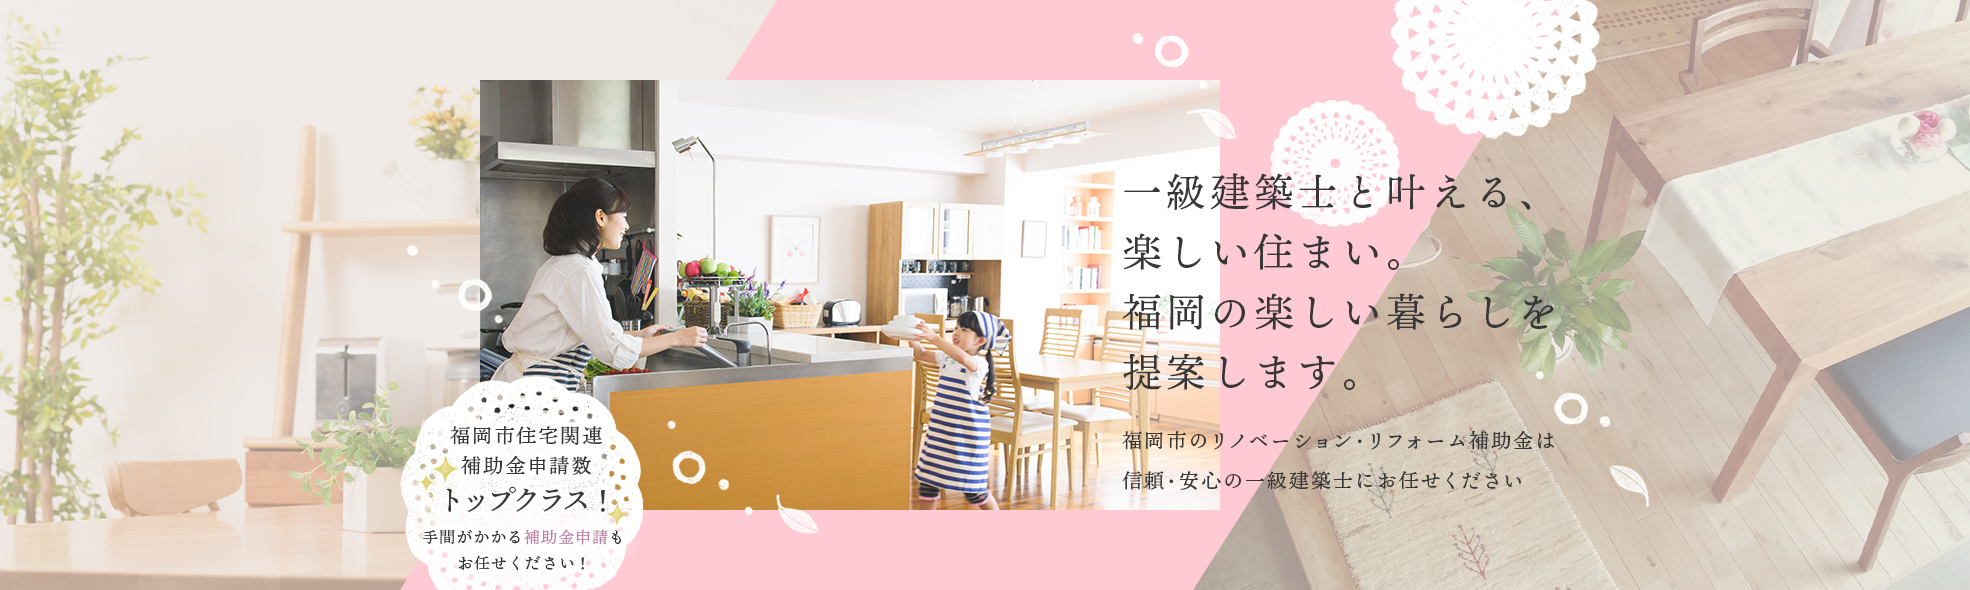 一級建築士と叶える、楽しい住まい。福岡の楽しい暮らしを提案します。